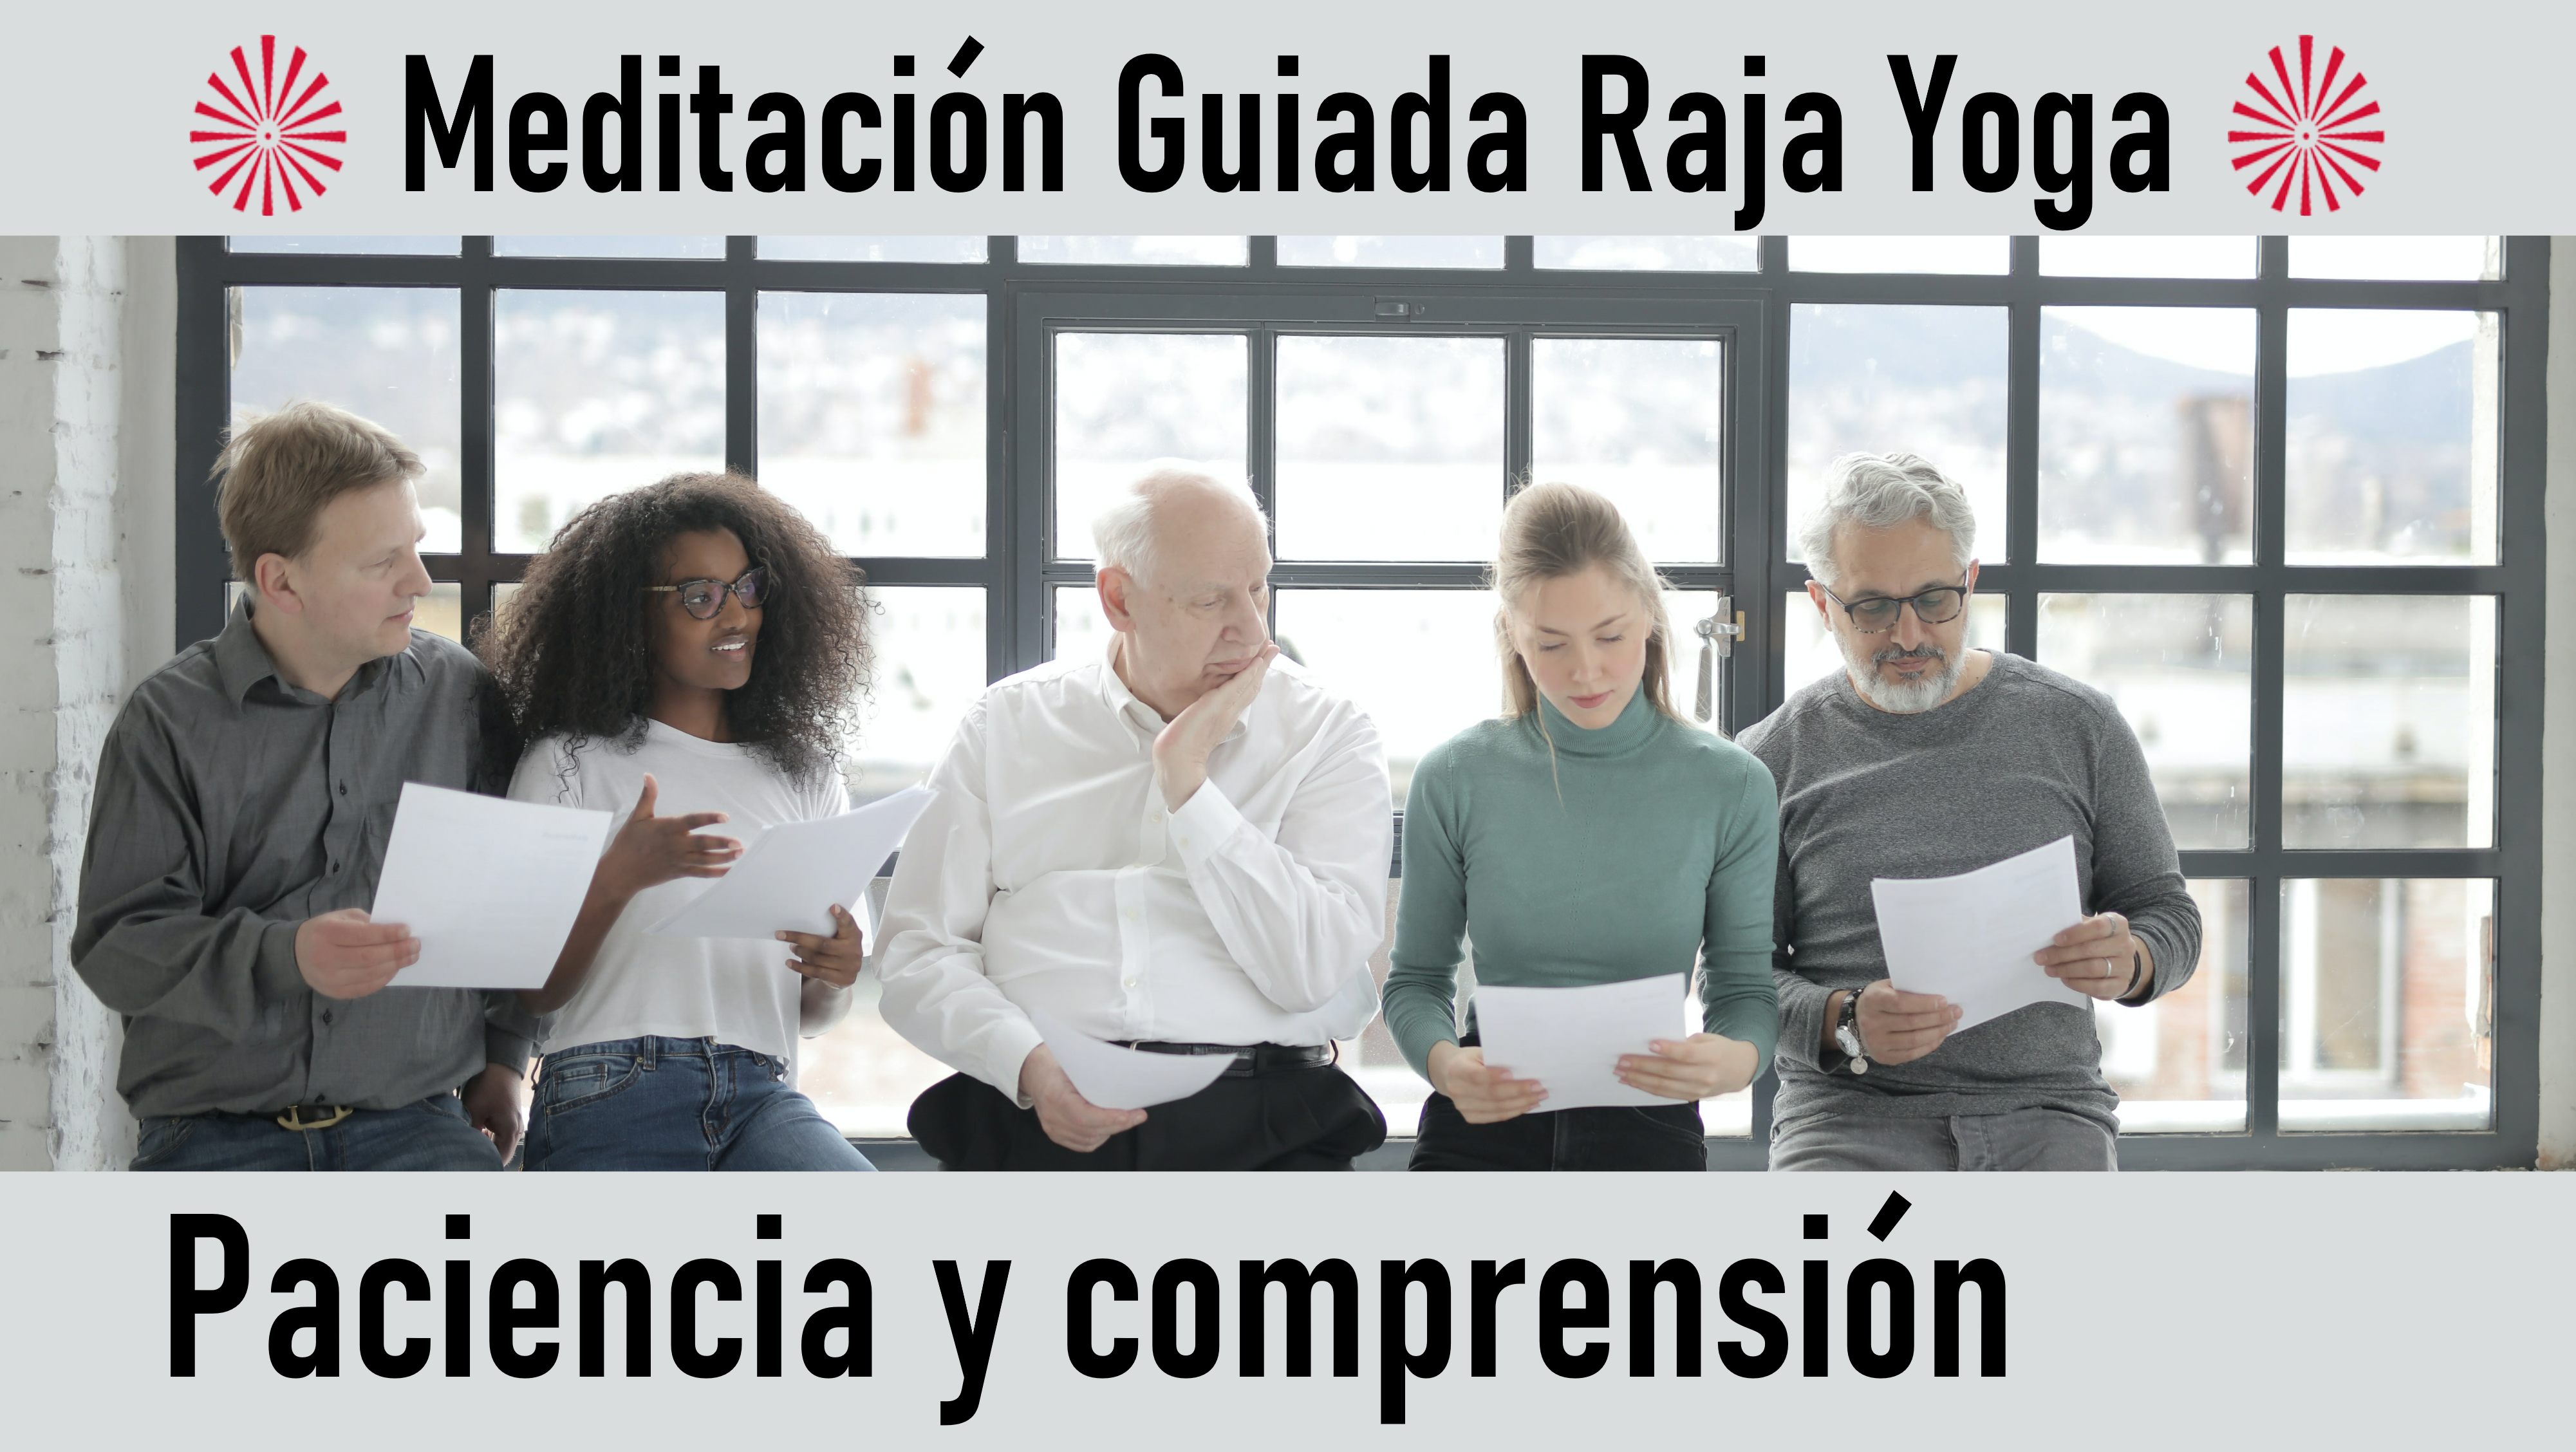 Meditación Raja Yoga: Paciencia y comprensión (1 Octubre 2020) On-line desde Madrid